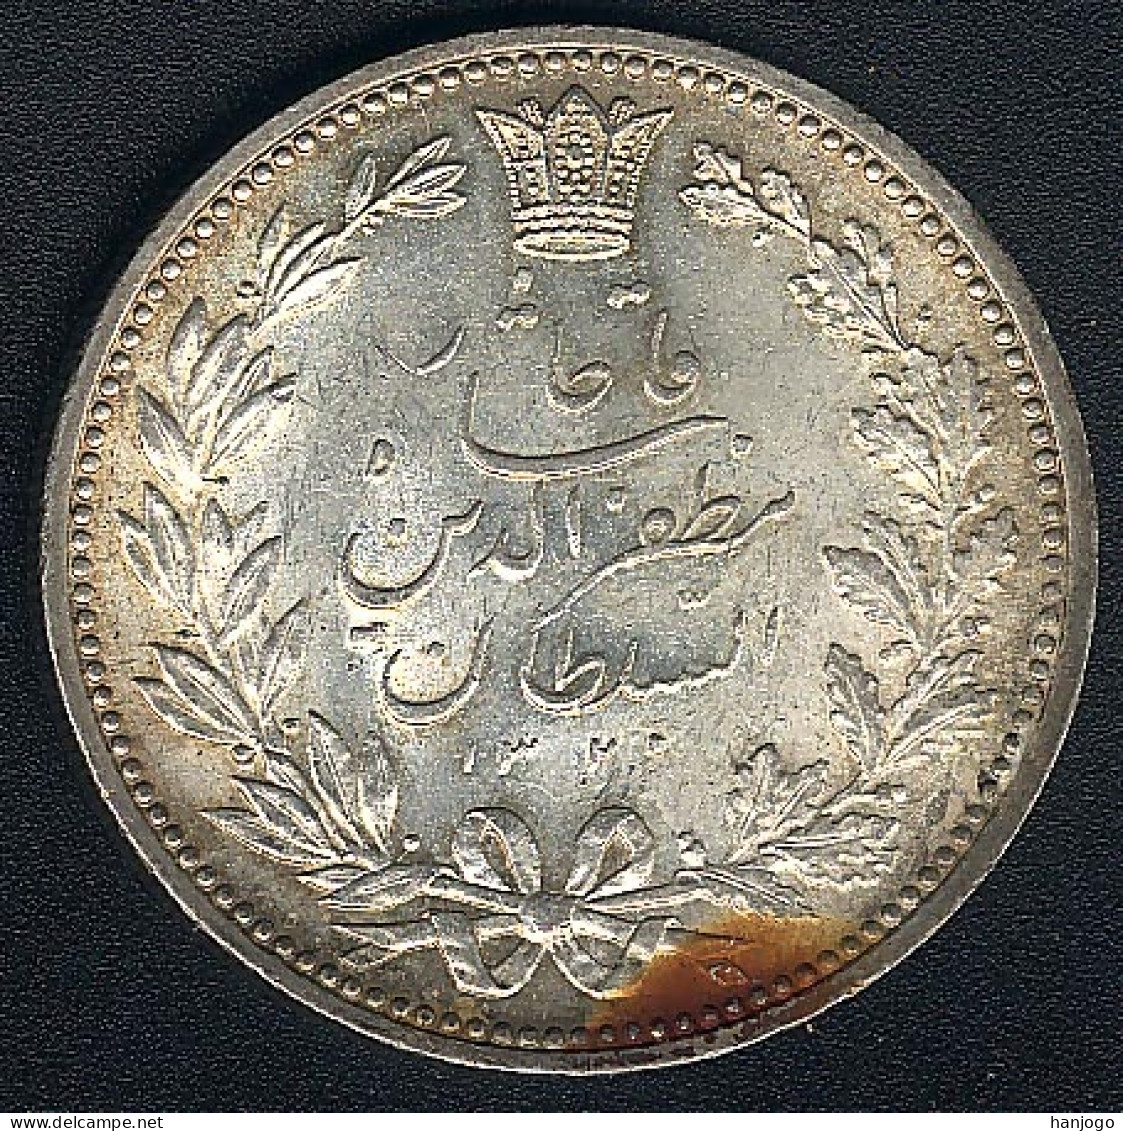 Iran, 5000 Dinars AH 1320, Silber, XF+ - Irán